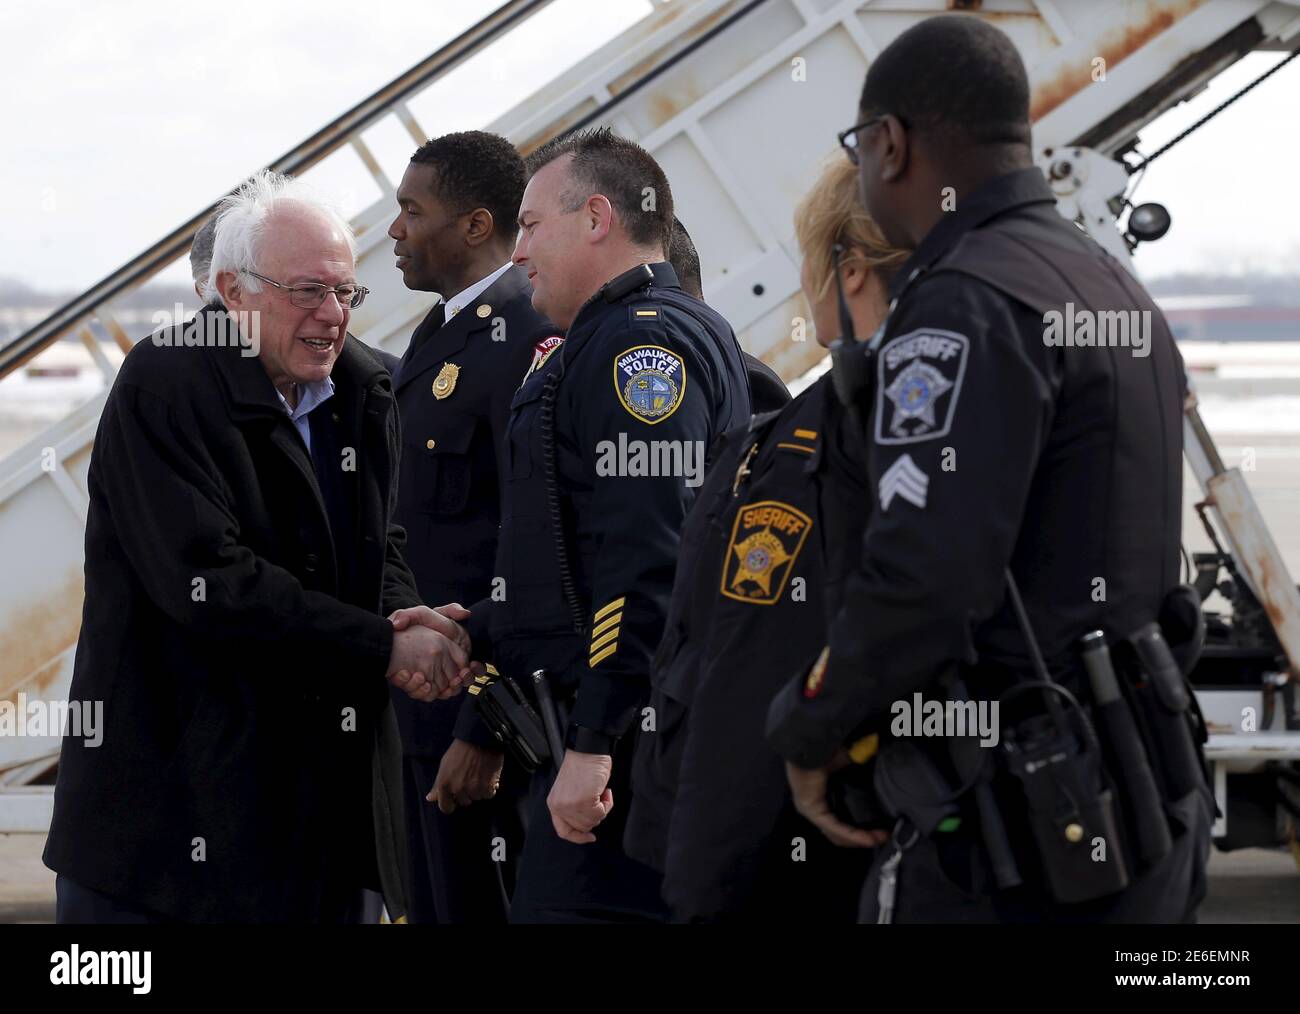 Le candidat présidentiel démocrate américain Bernie Sanders salue les gens avant d'embarquer dans son avion de campagne à Milwaukee, Wisconsin, États-Unis, le 12 février 2016. REUTERS/Jim Young Banque D'Images